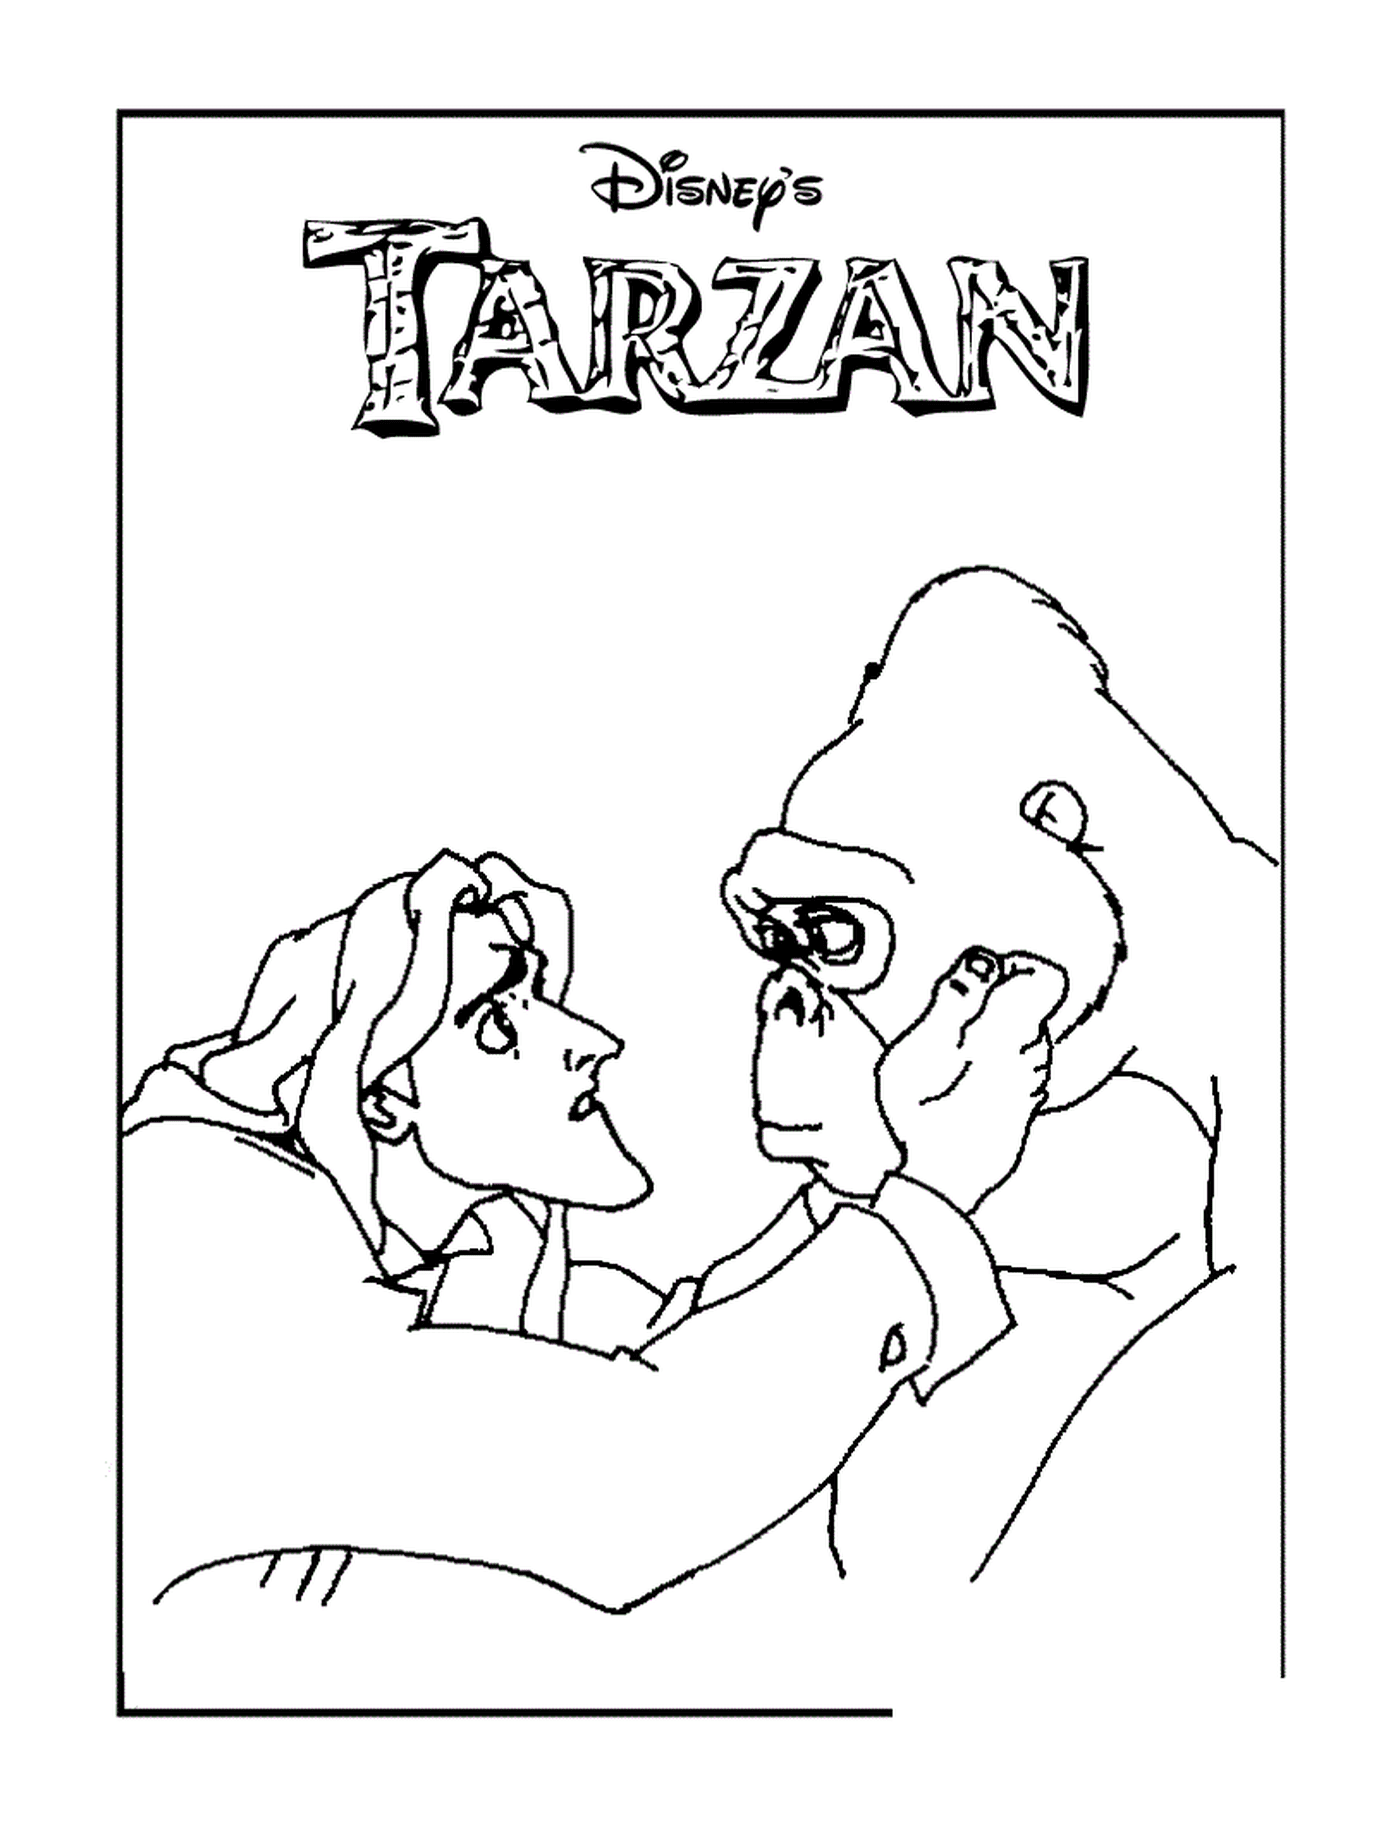  Tarzán y gorila 